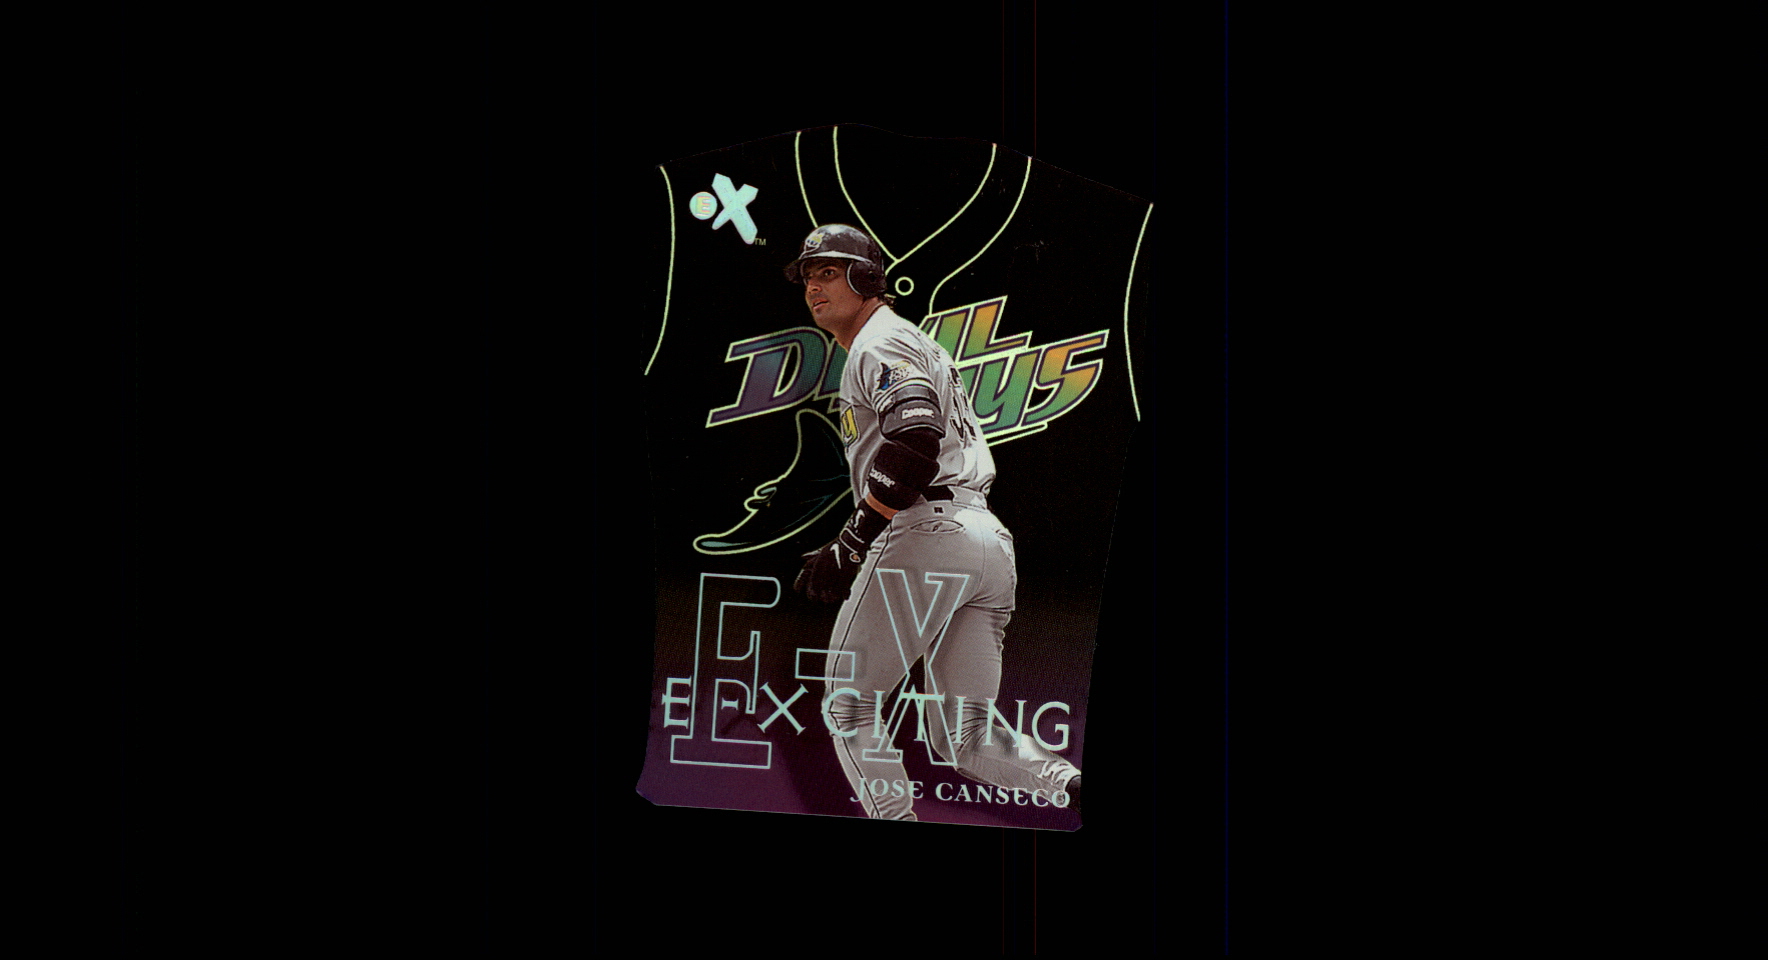 2000 E-X E-Xciting #XT6 Jose Canseco